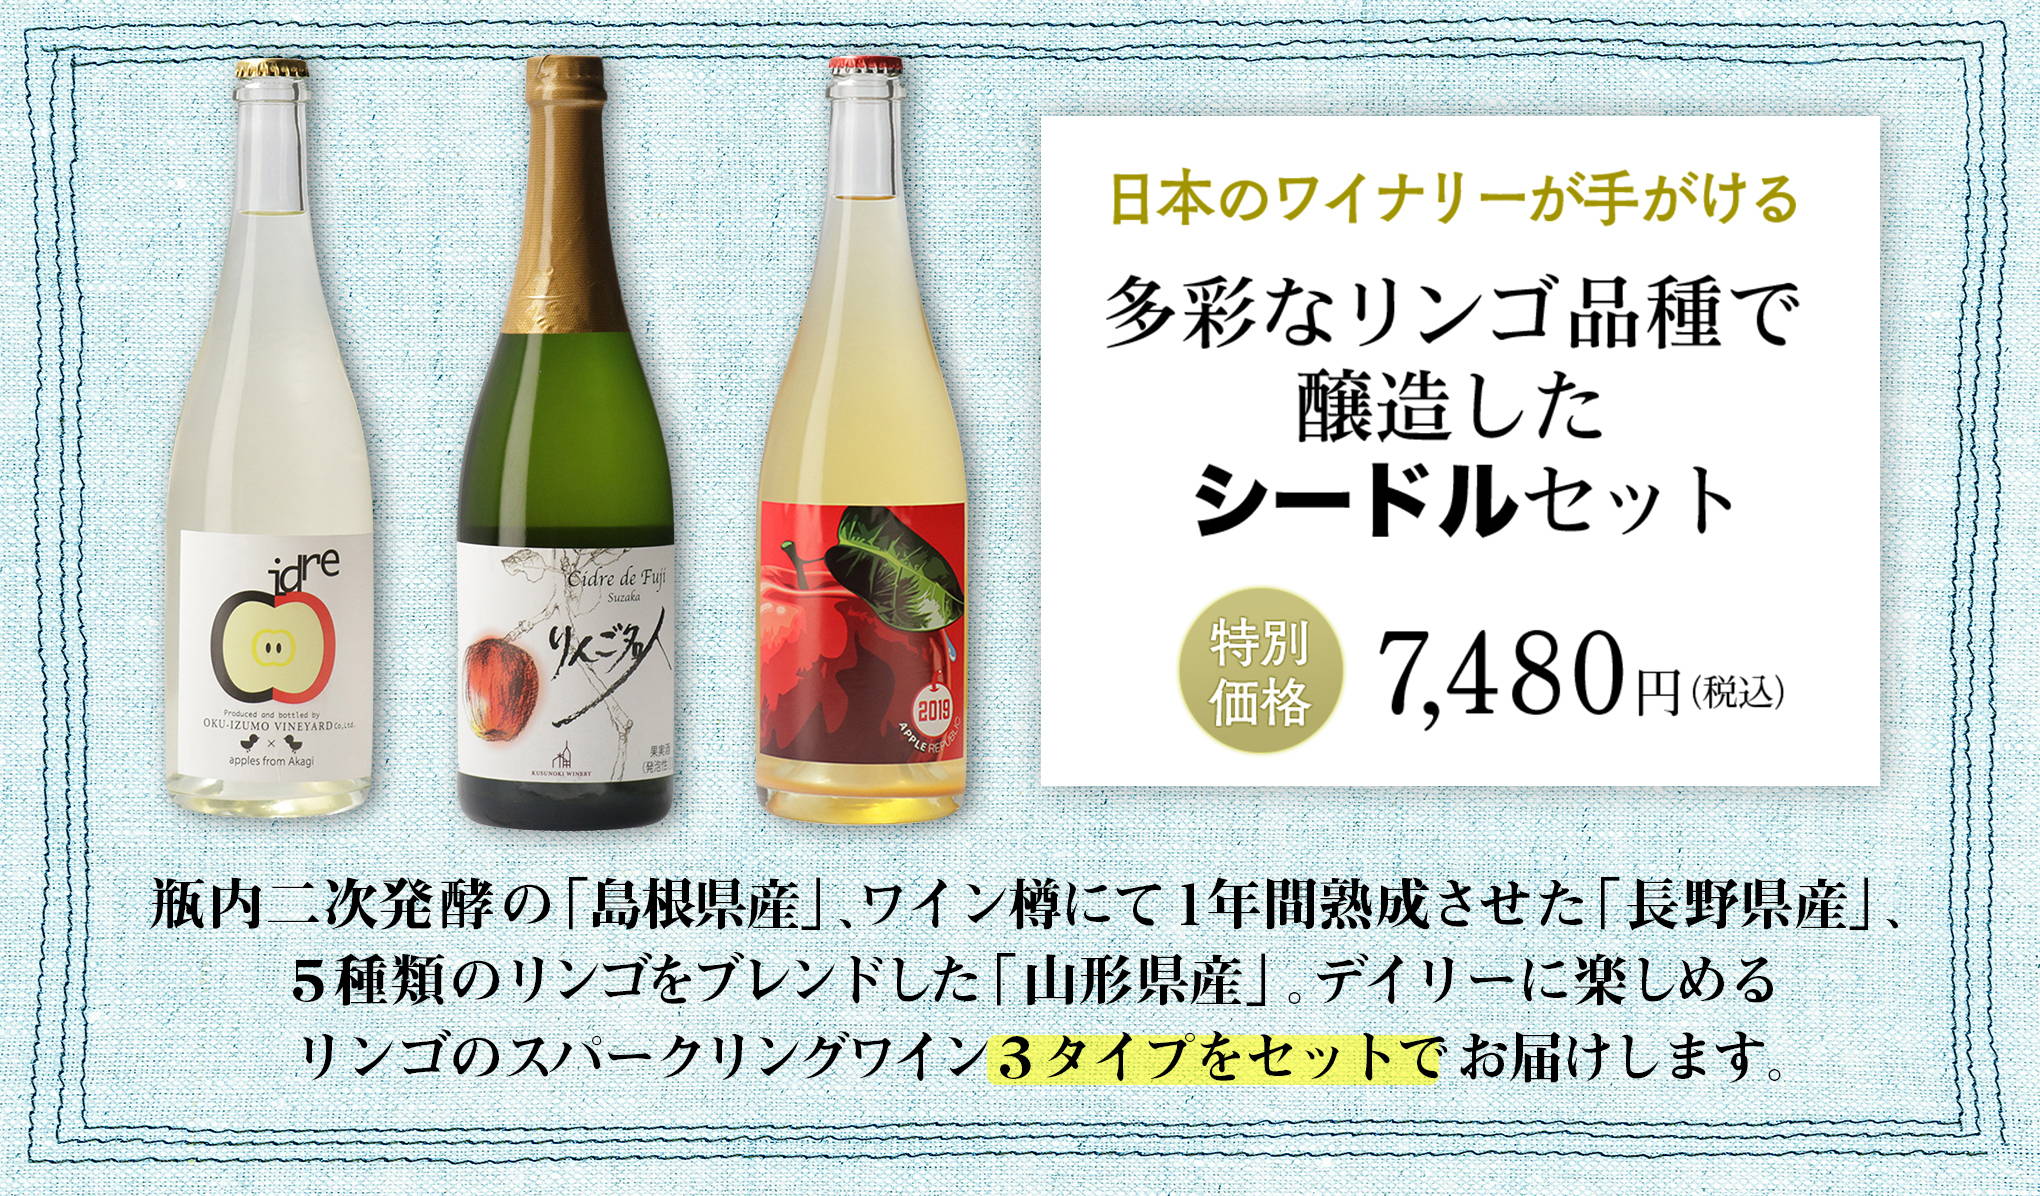 日本ワインを知り尽くしたバイヤーが選ぶ、『wa-syu』限定セット vol.4